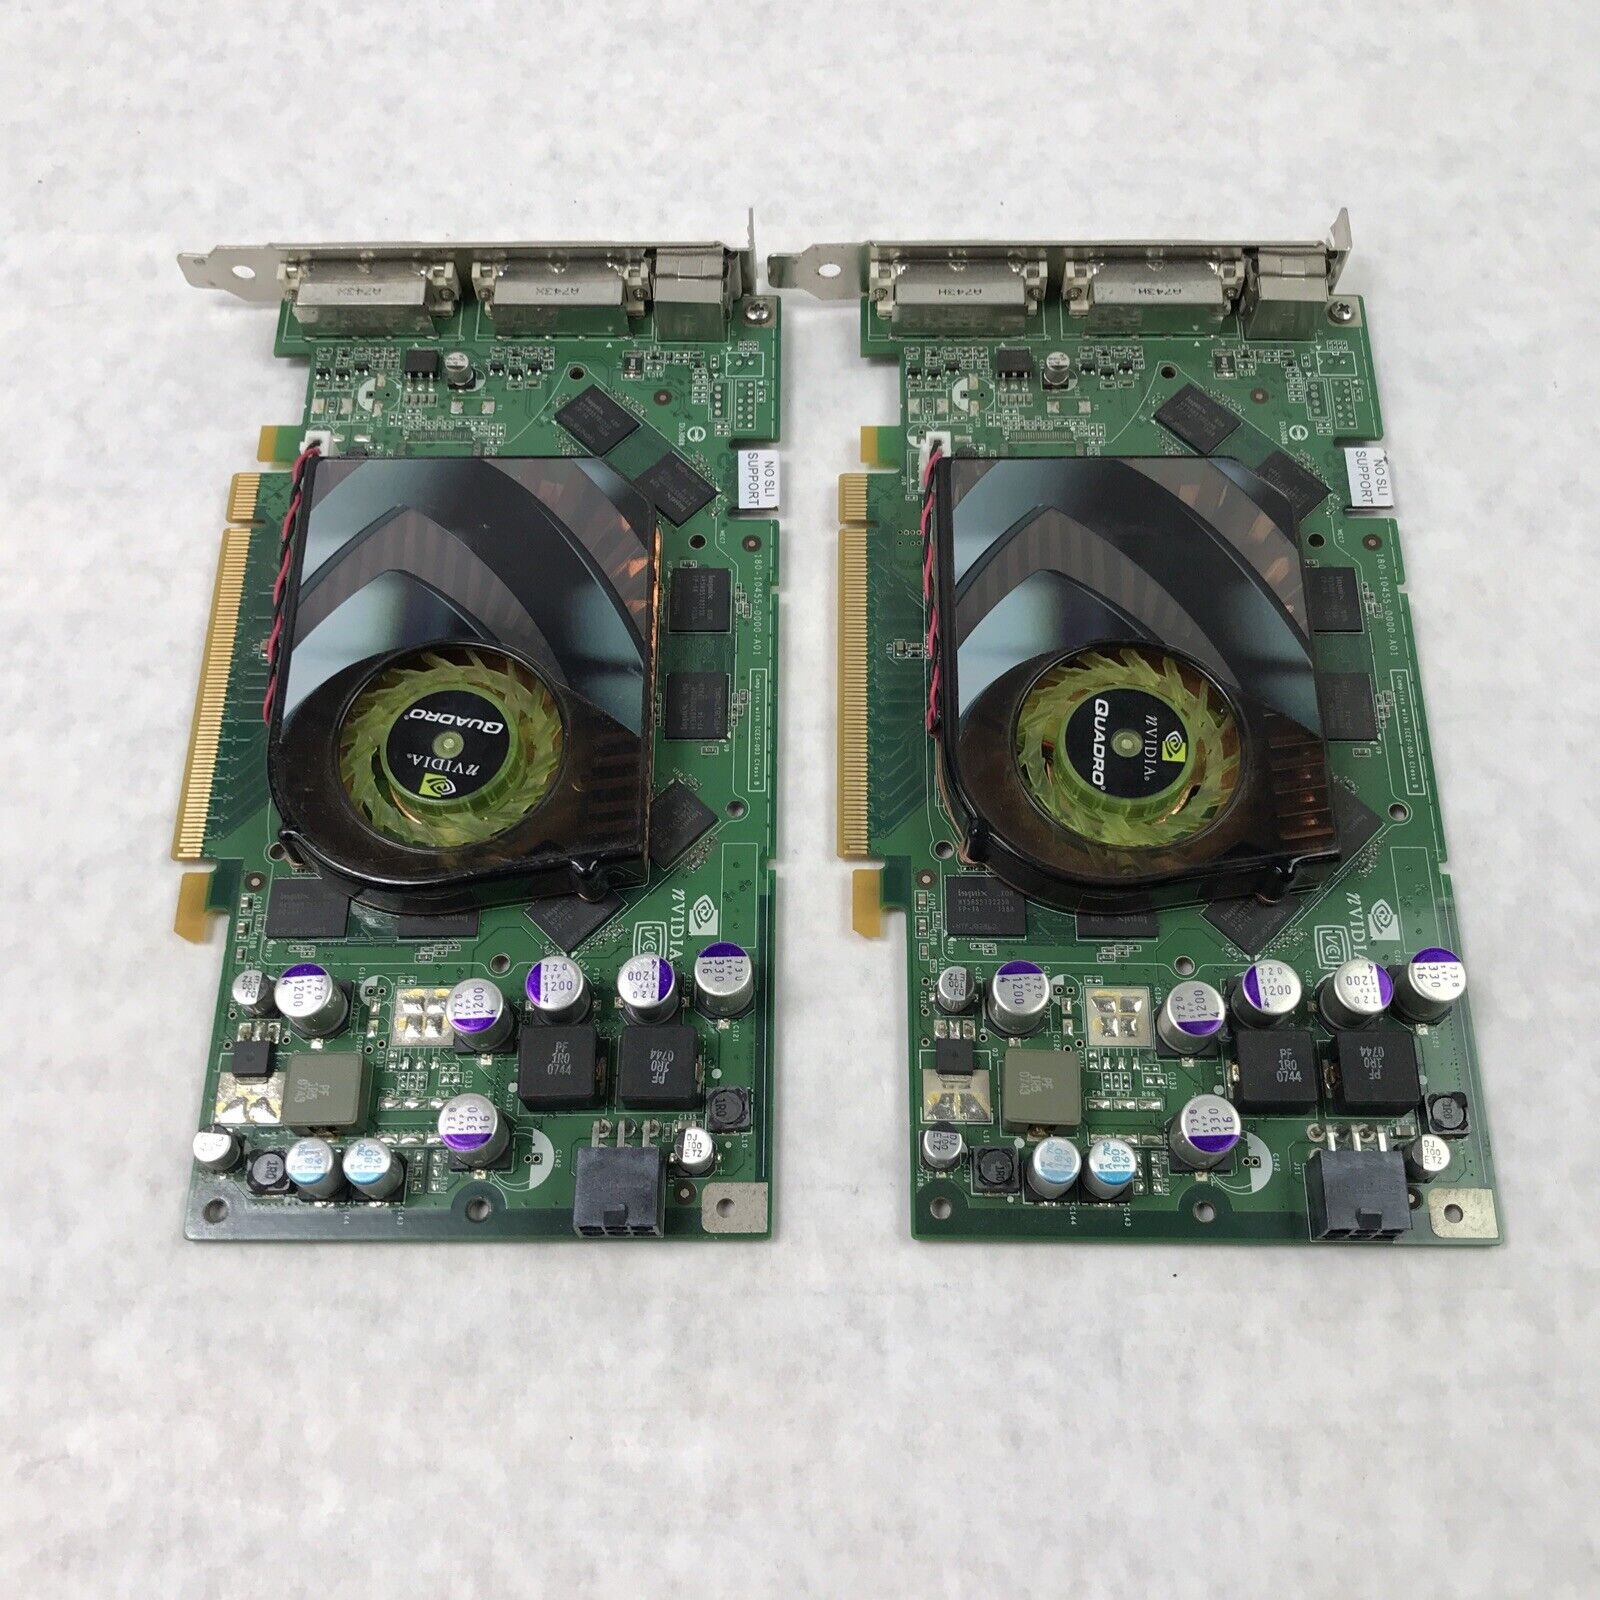 Nvidia Quadro FX 3450 0T9099 256MB PCI-e Dual DVI Video Card (Lot of 2)